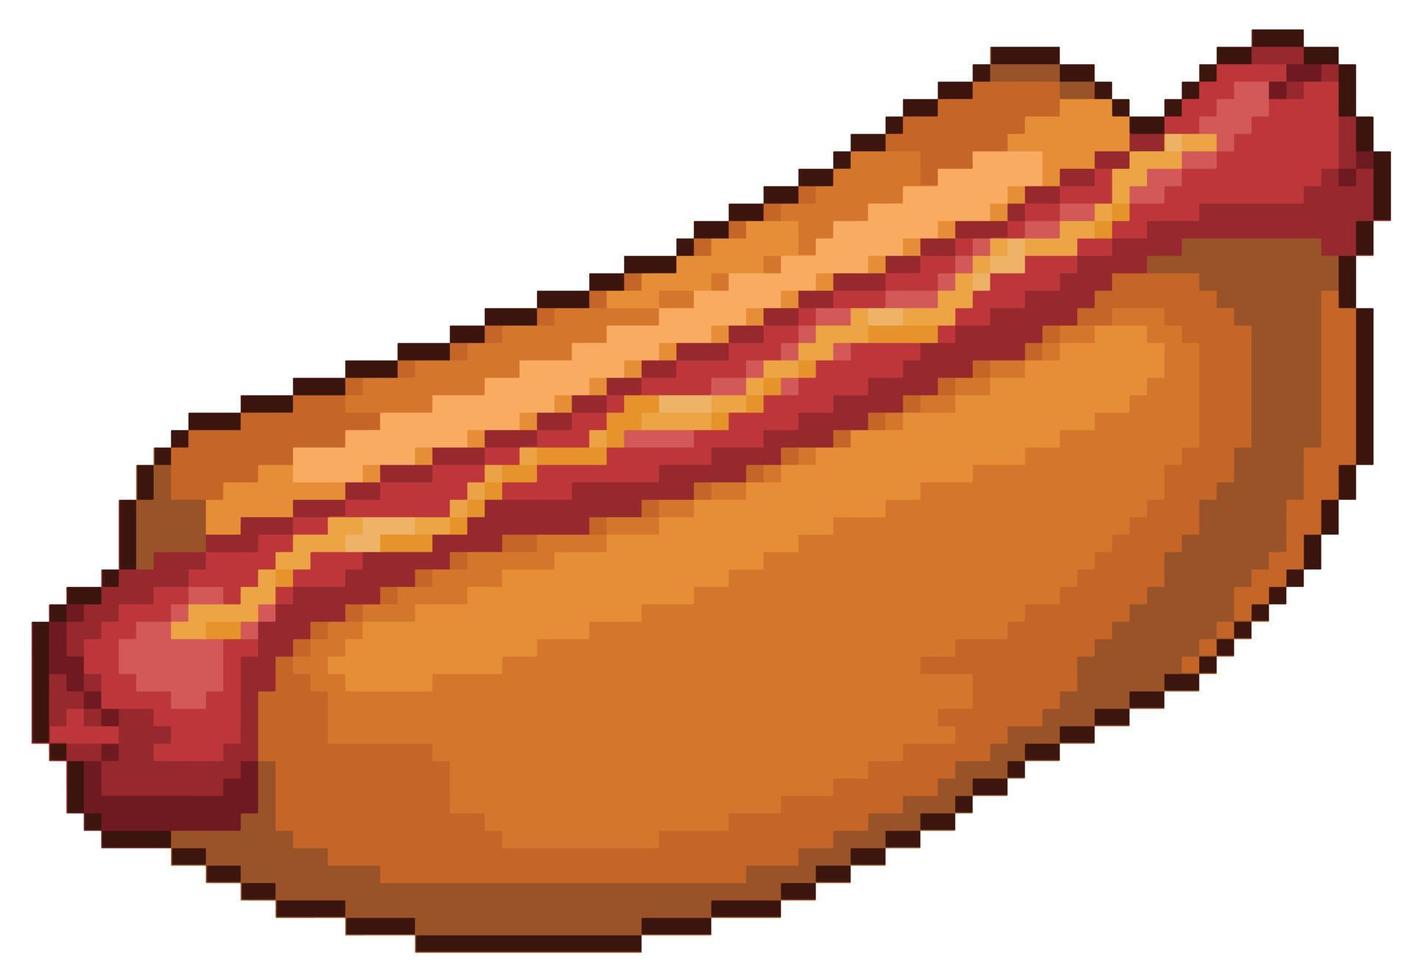 Pixel Art Hot Dog Fast Food 8-Bit-Spielelement auf weißem Hintergrund vektor